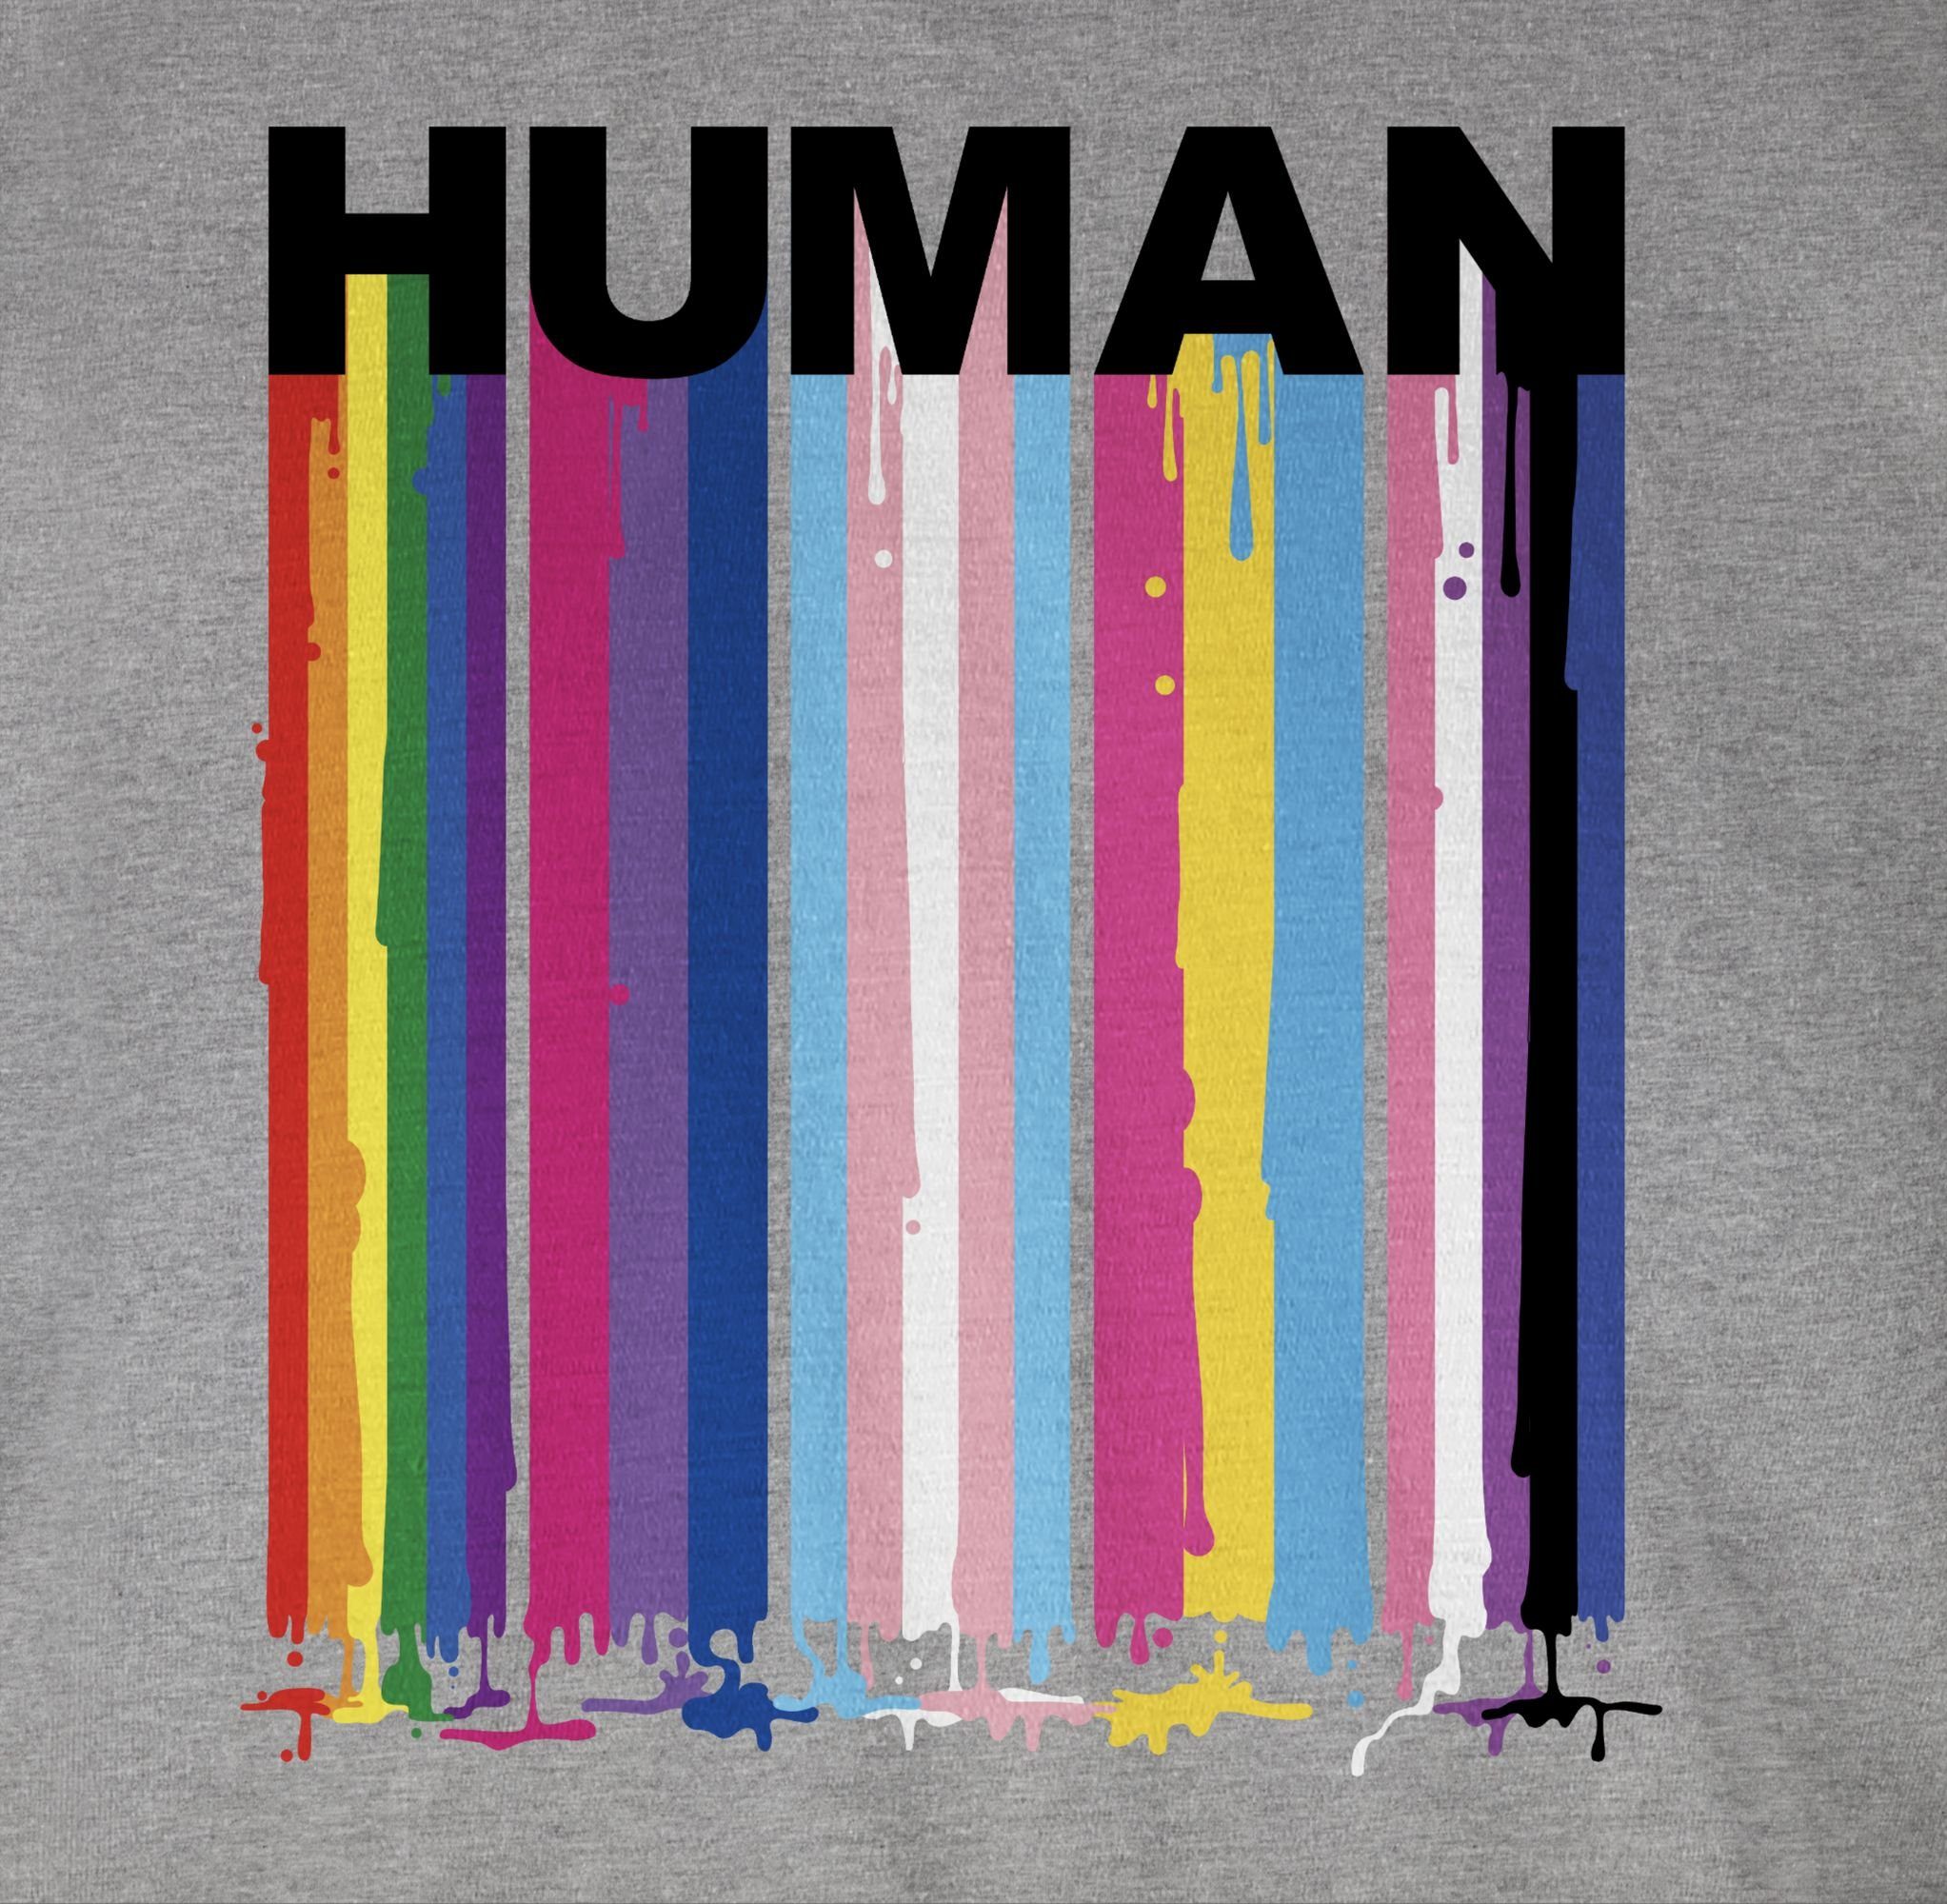 T-Shirt Grau HUMAN Regenbogen Farben meliert LGBT Kleidung Blockschrift Shirtracer Tropfen 3